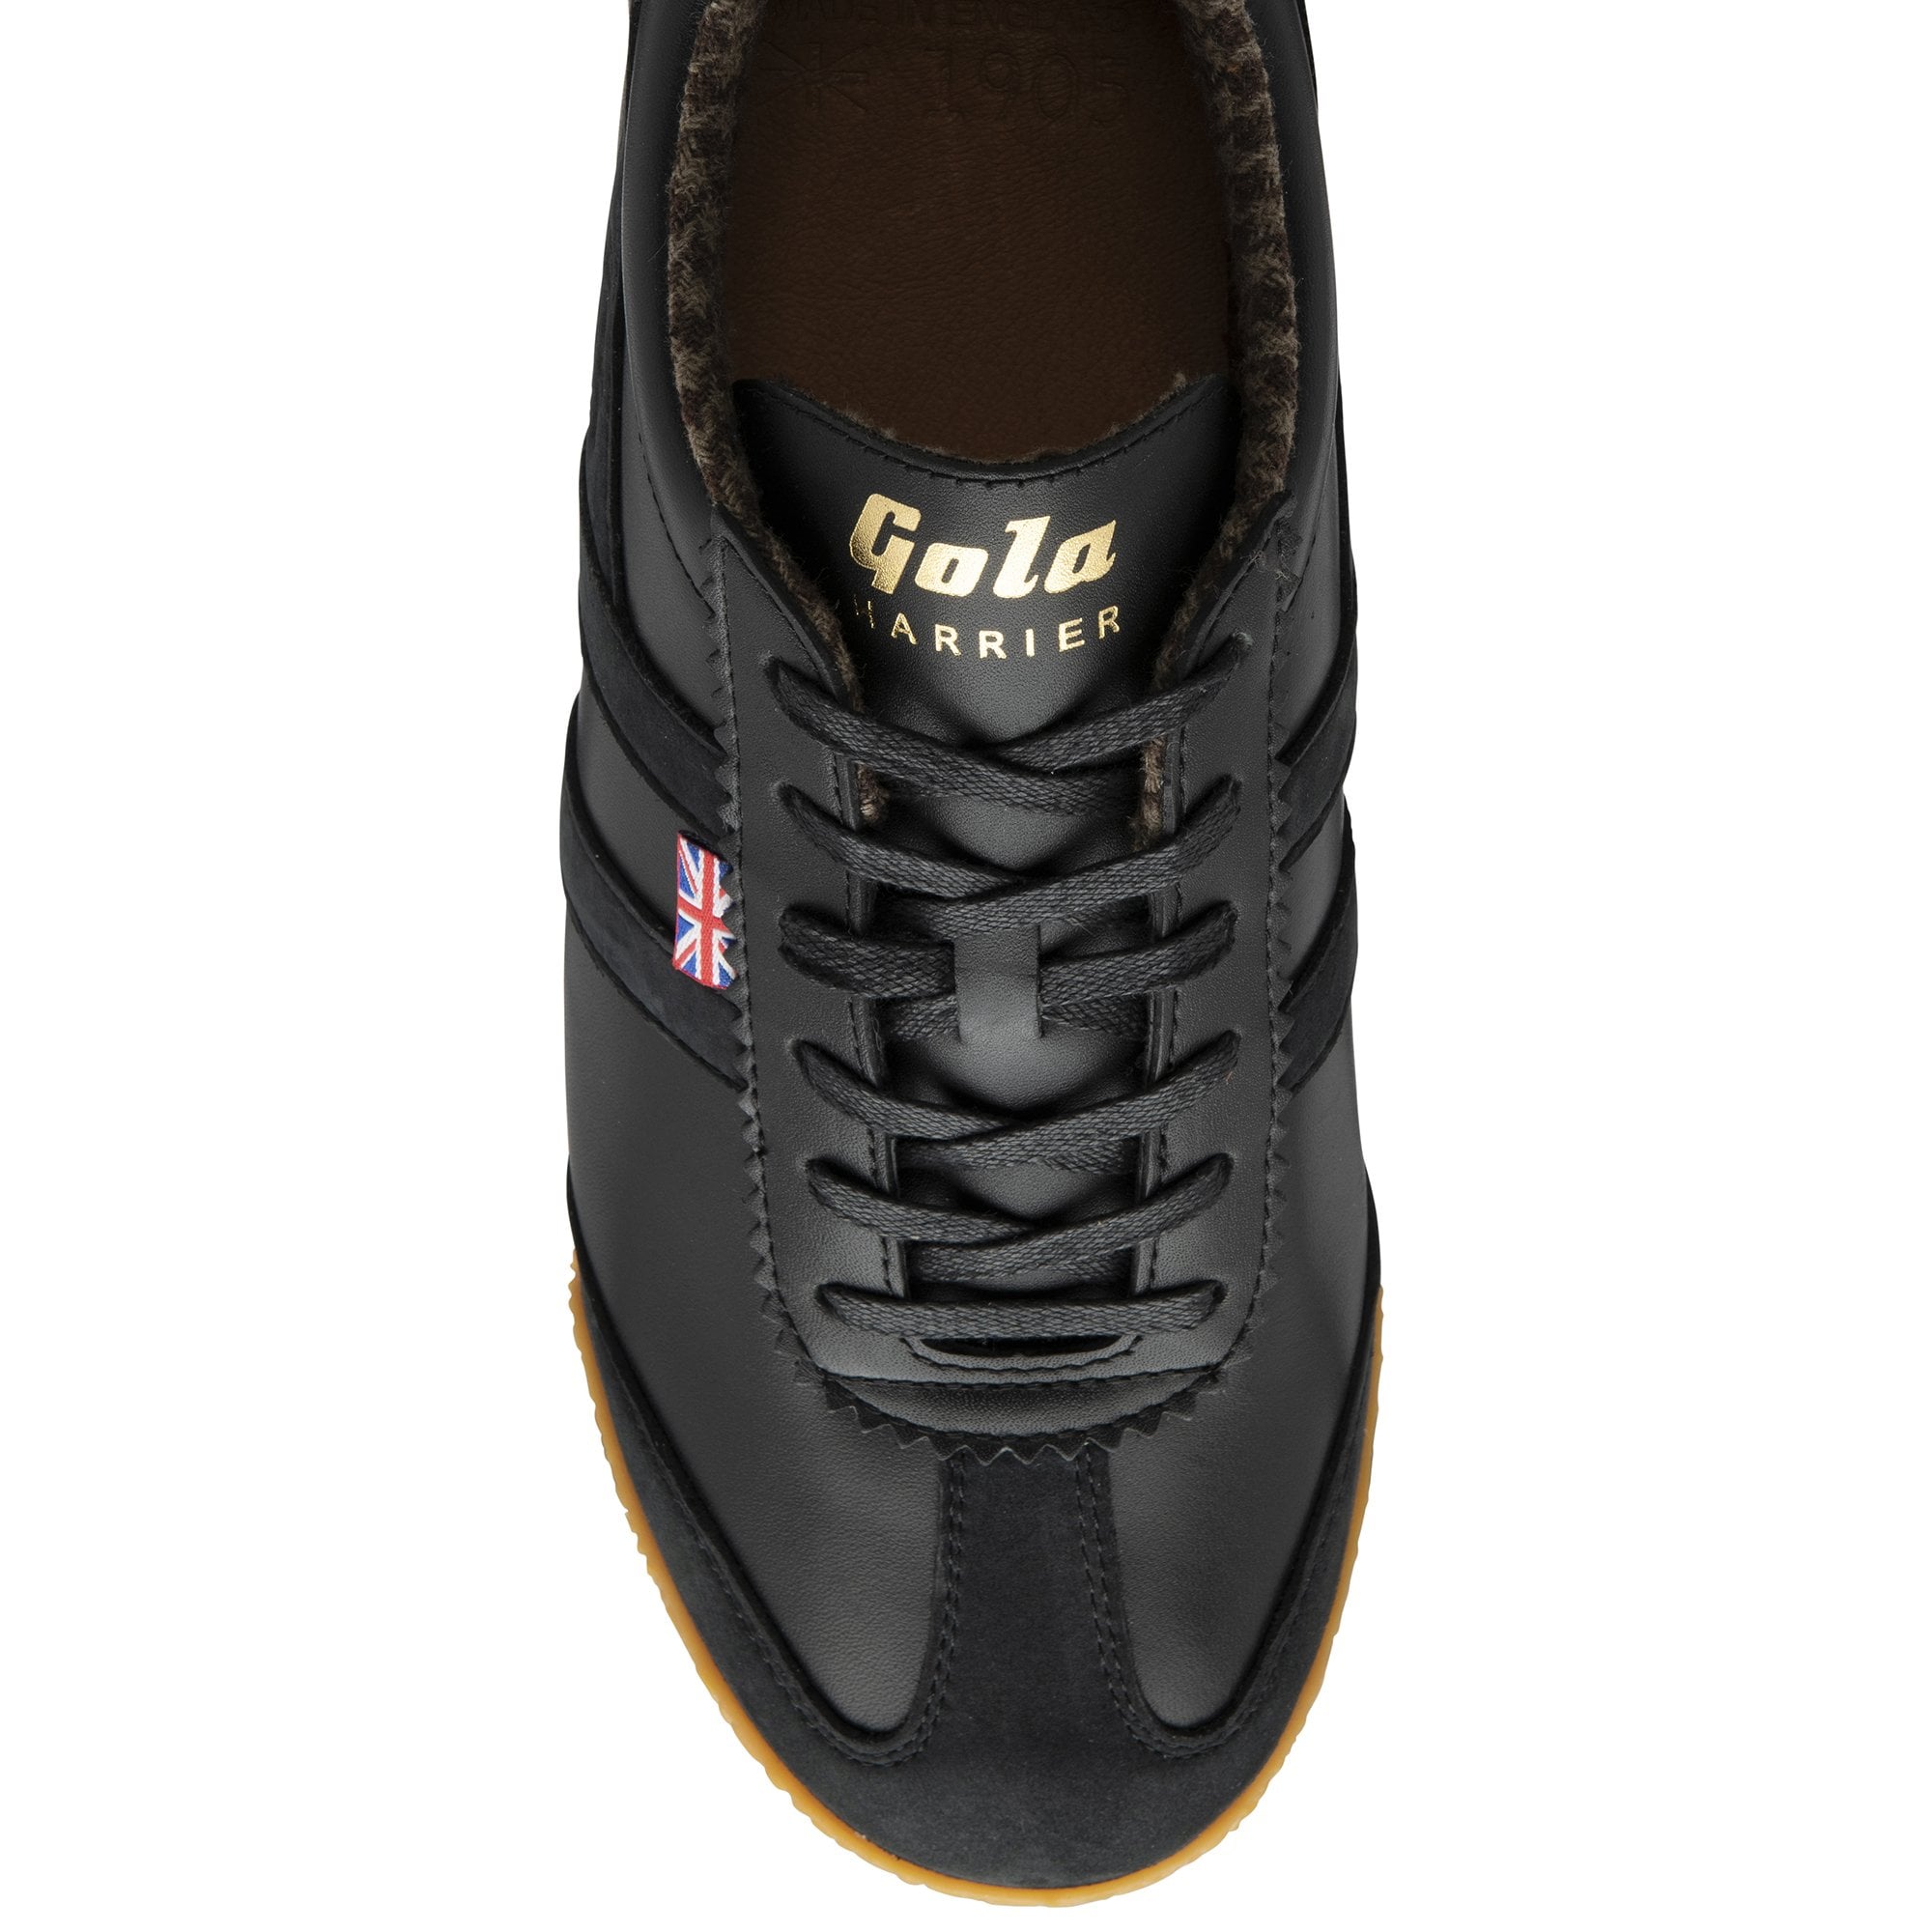 Gola Made in England – 1905 Herren Harrier Tweed Sneaker